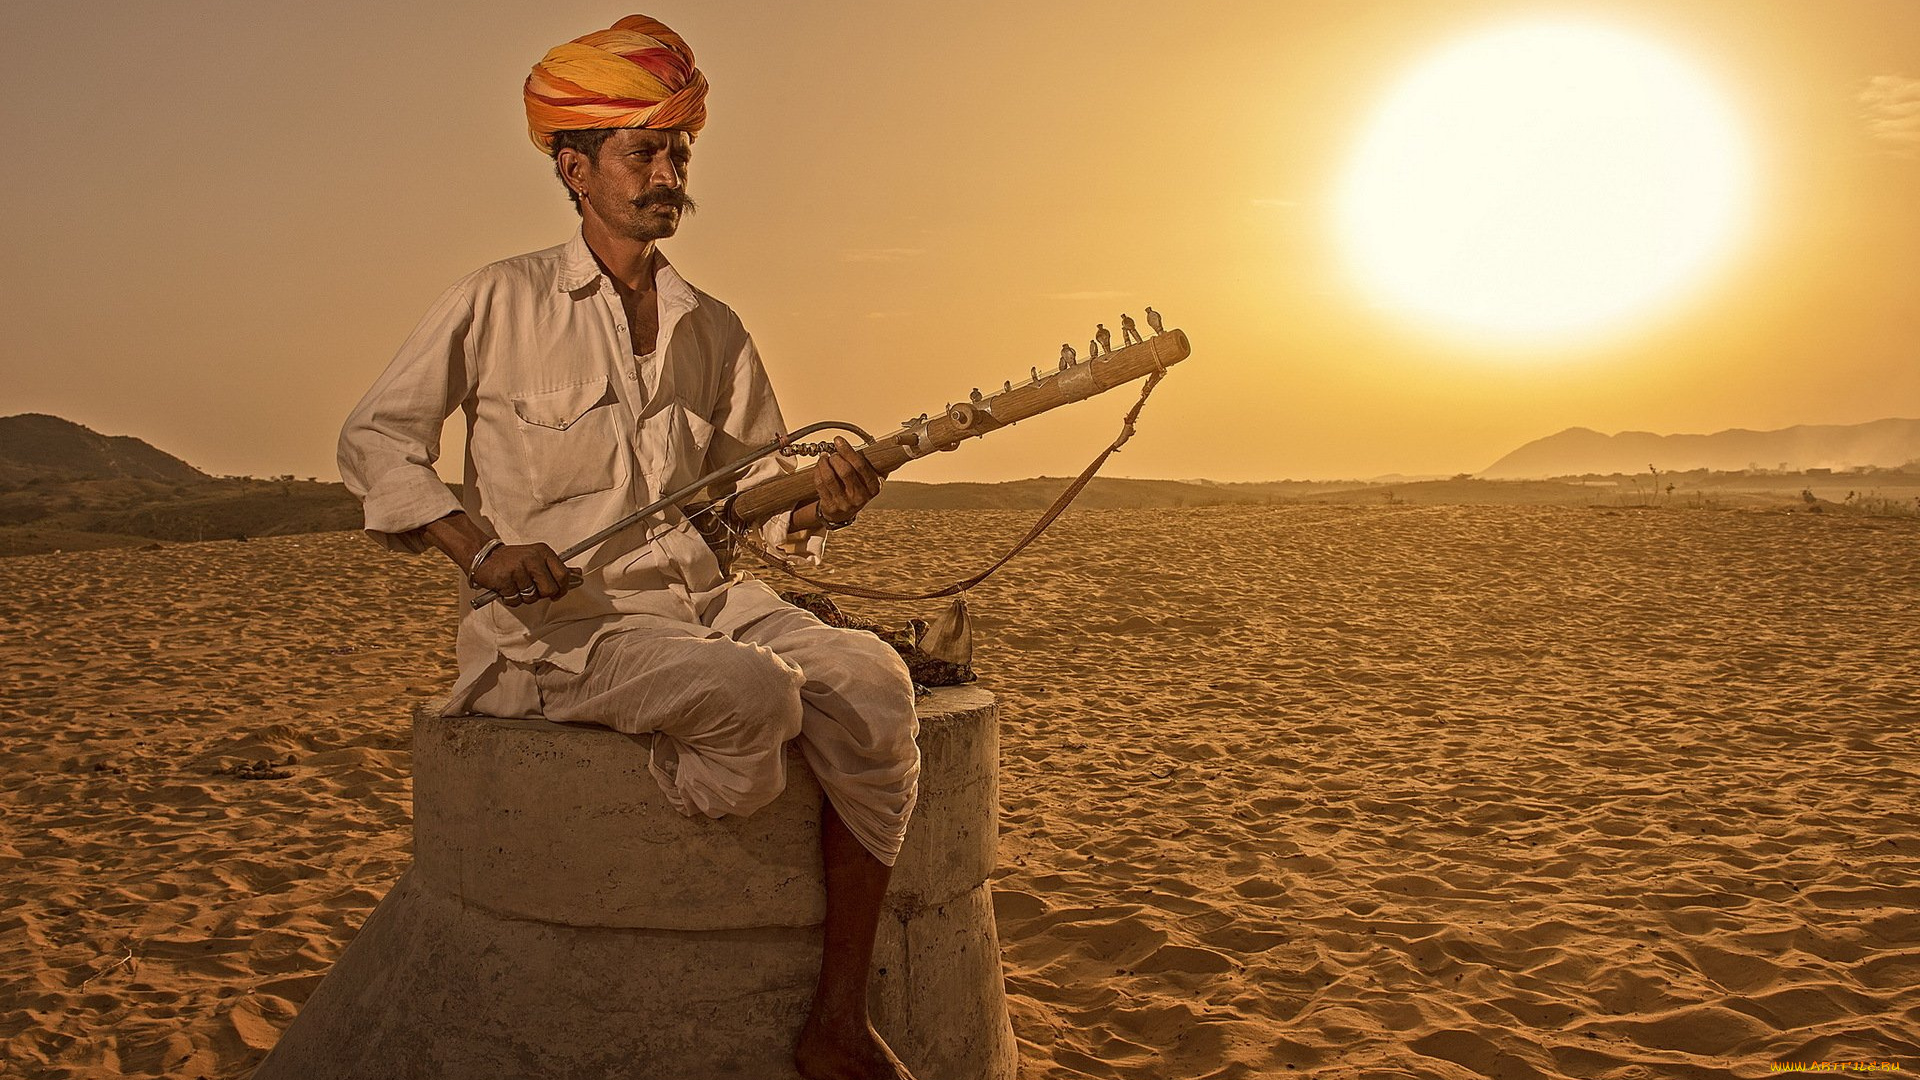 музыка, -другое, инструмент, мужчина, тюрбан, песок